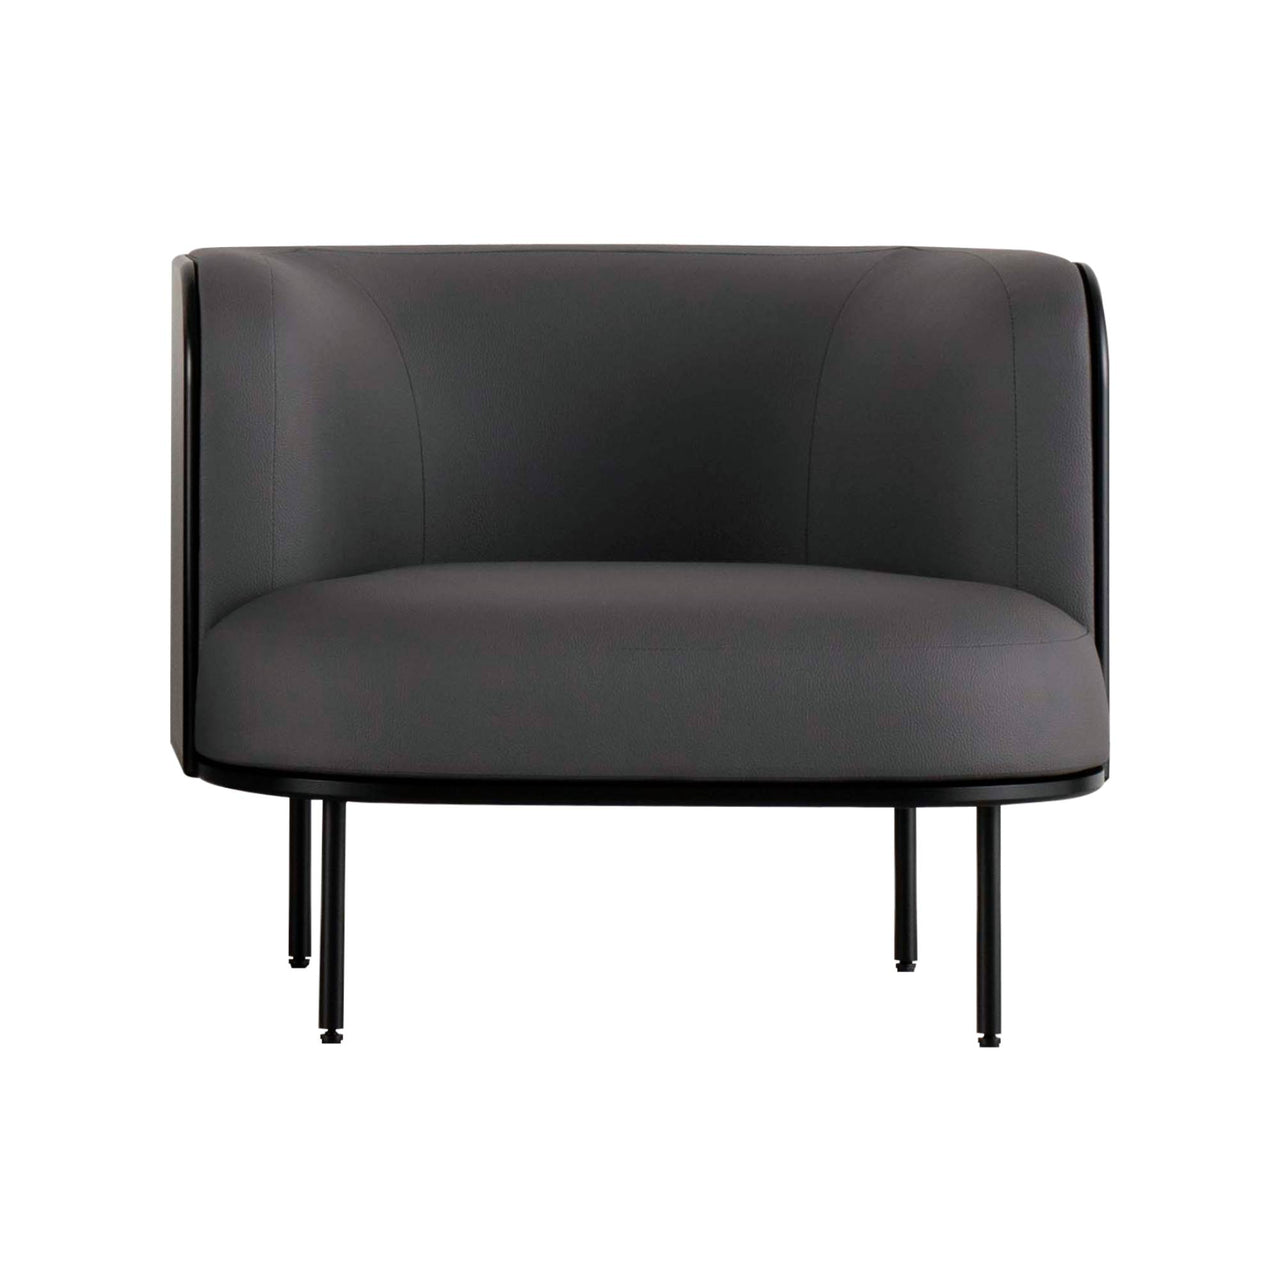 Spica Sofa: 1 + Black